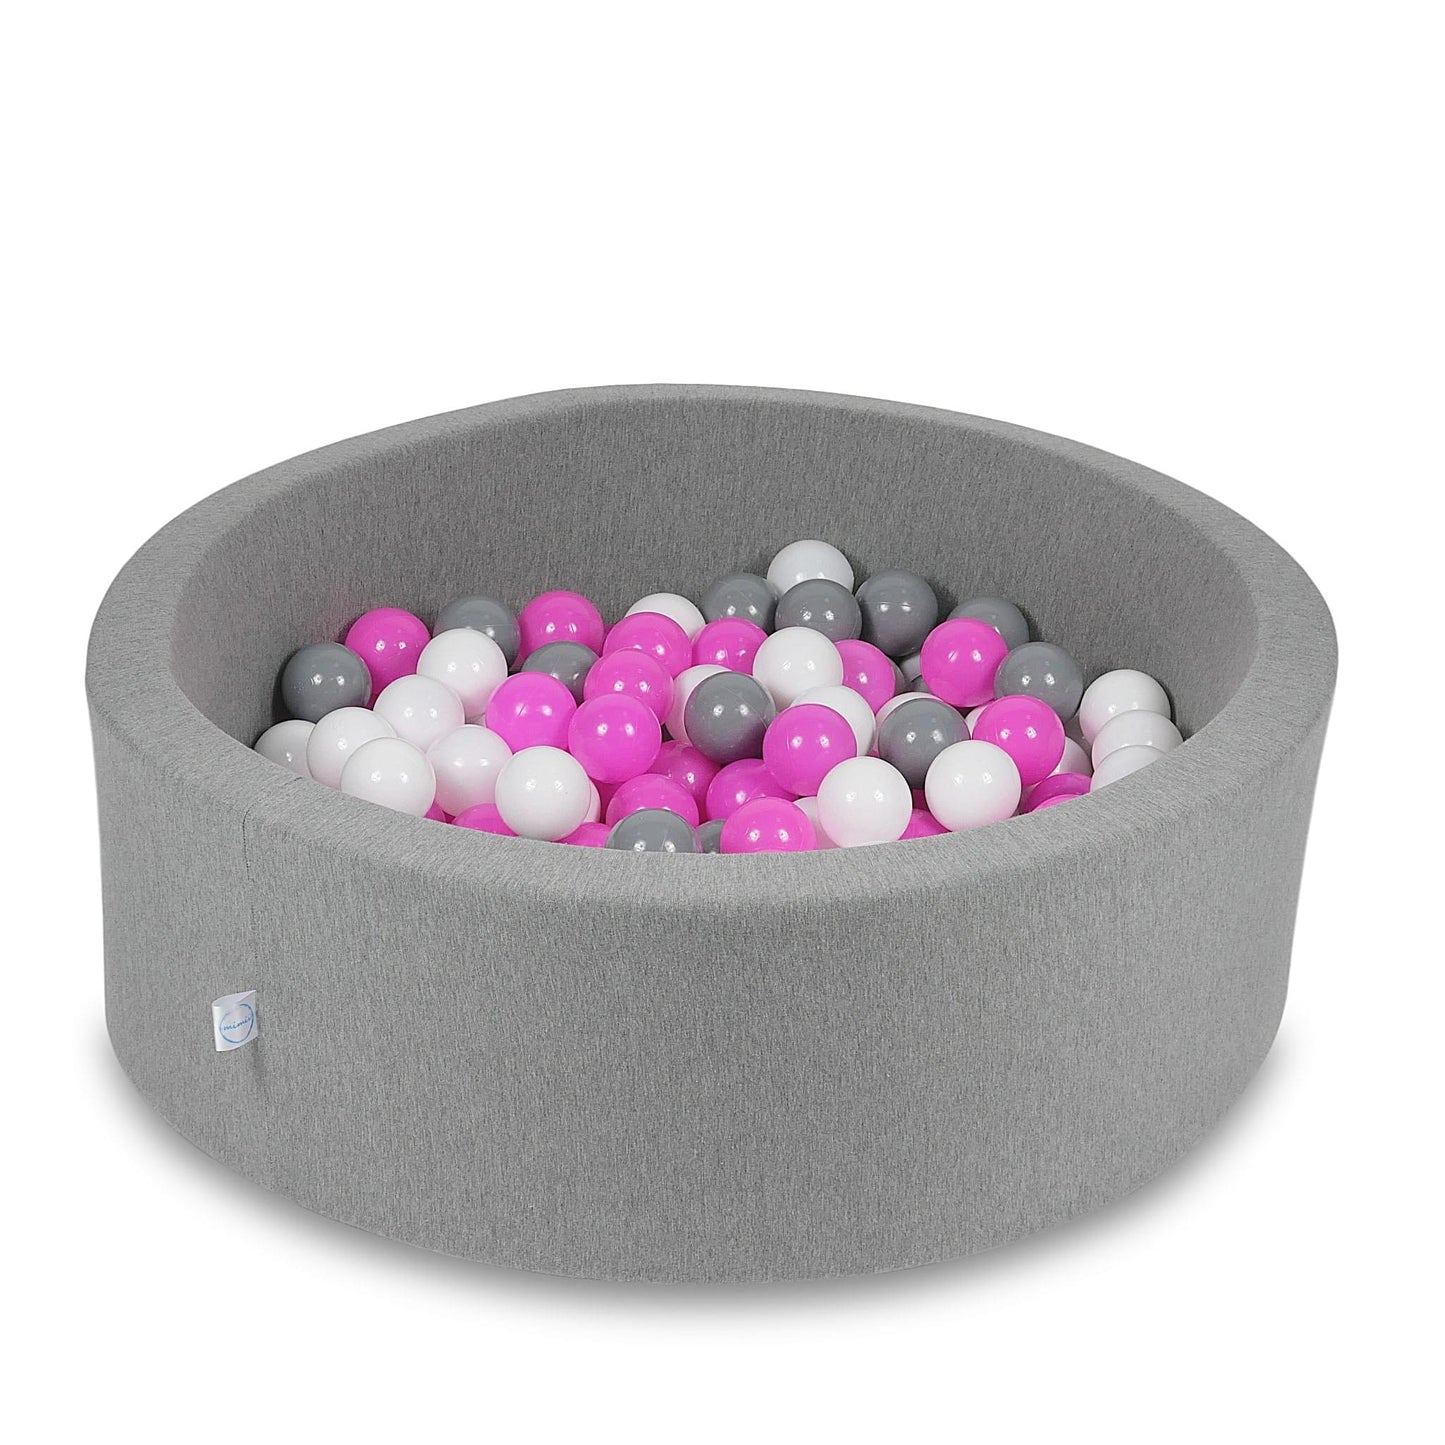 Piscine à Balles 90x30cm grise avec balles 200pcs (blanc, gris, rose)